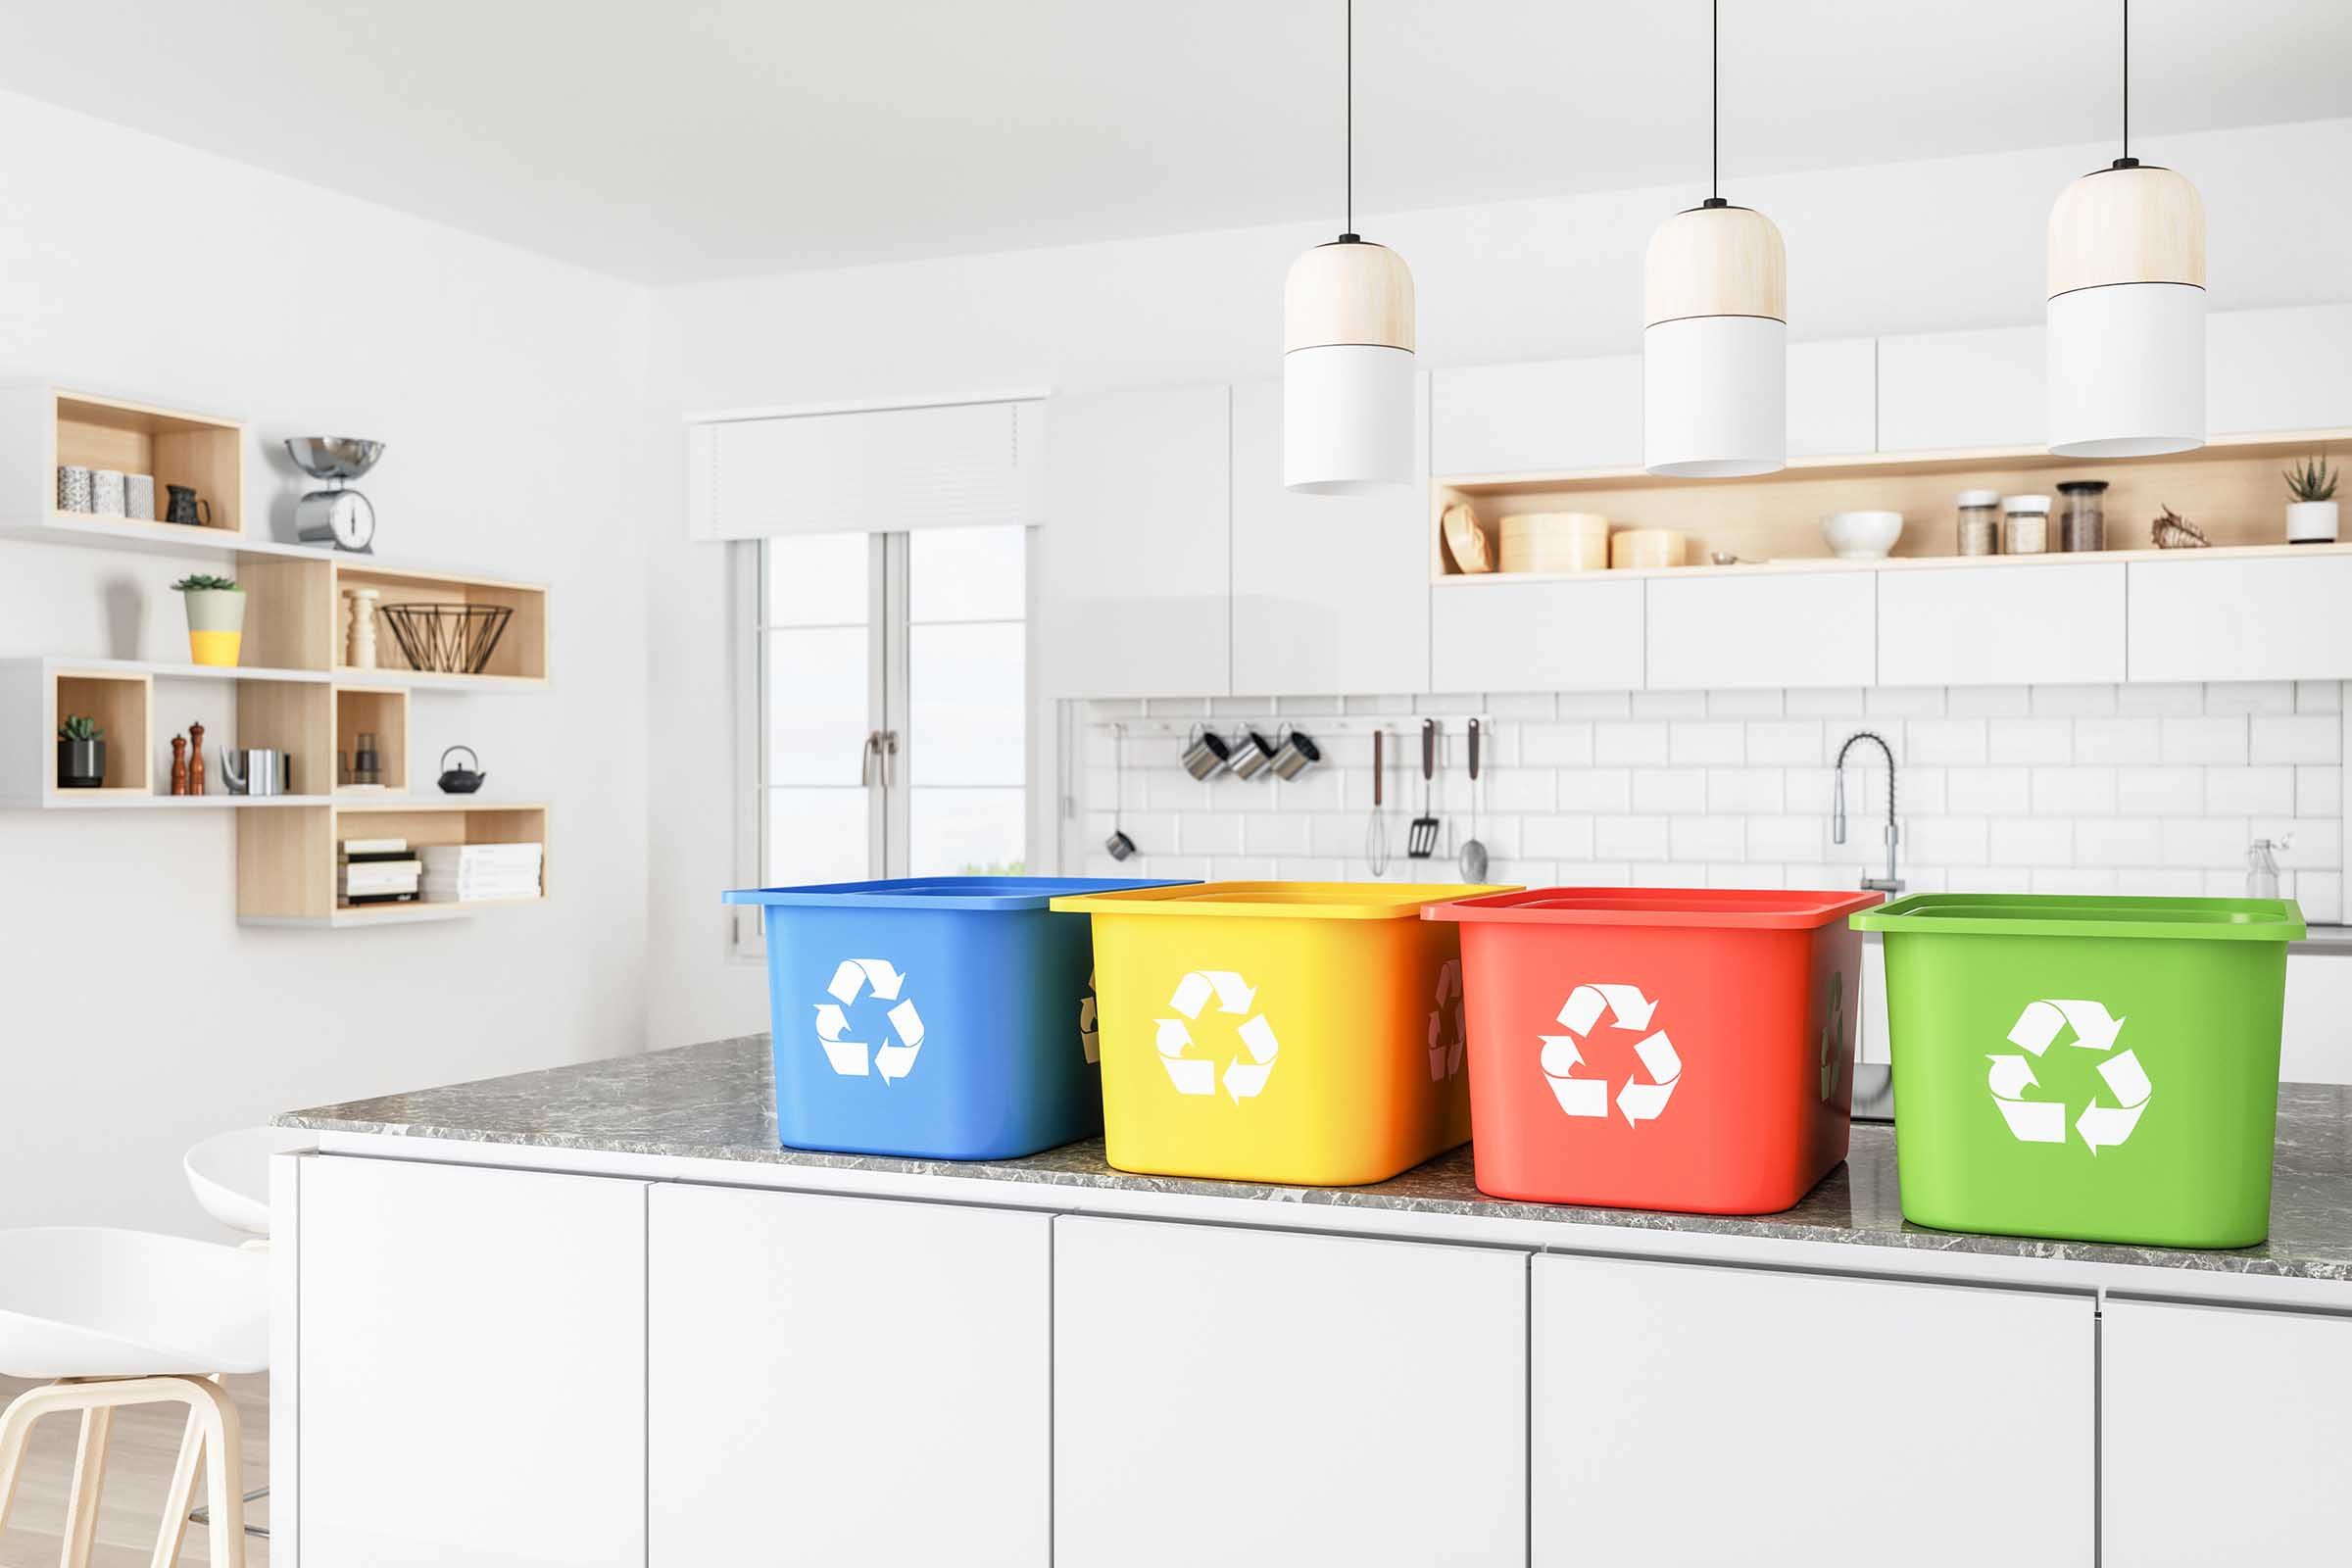 Reciclaje de basura: Cómo reciclar de manera efectiva